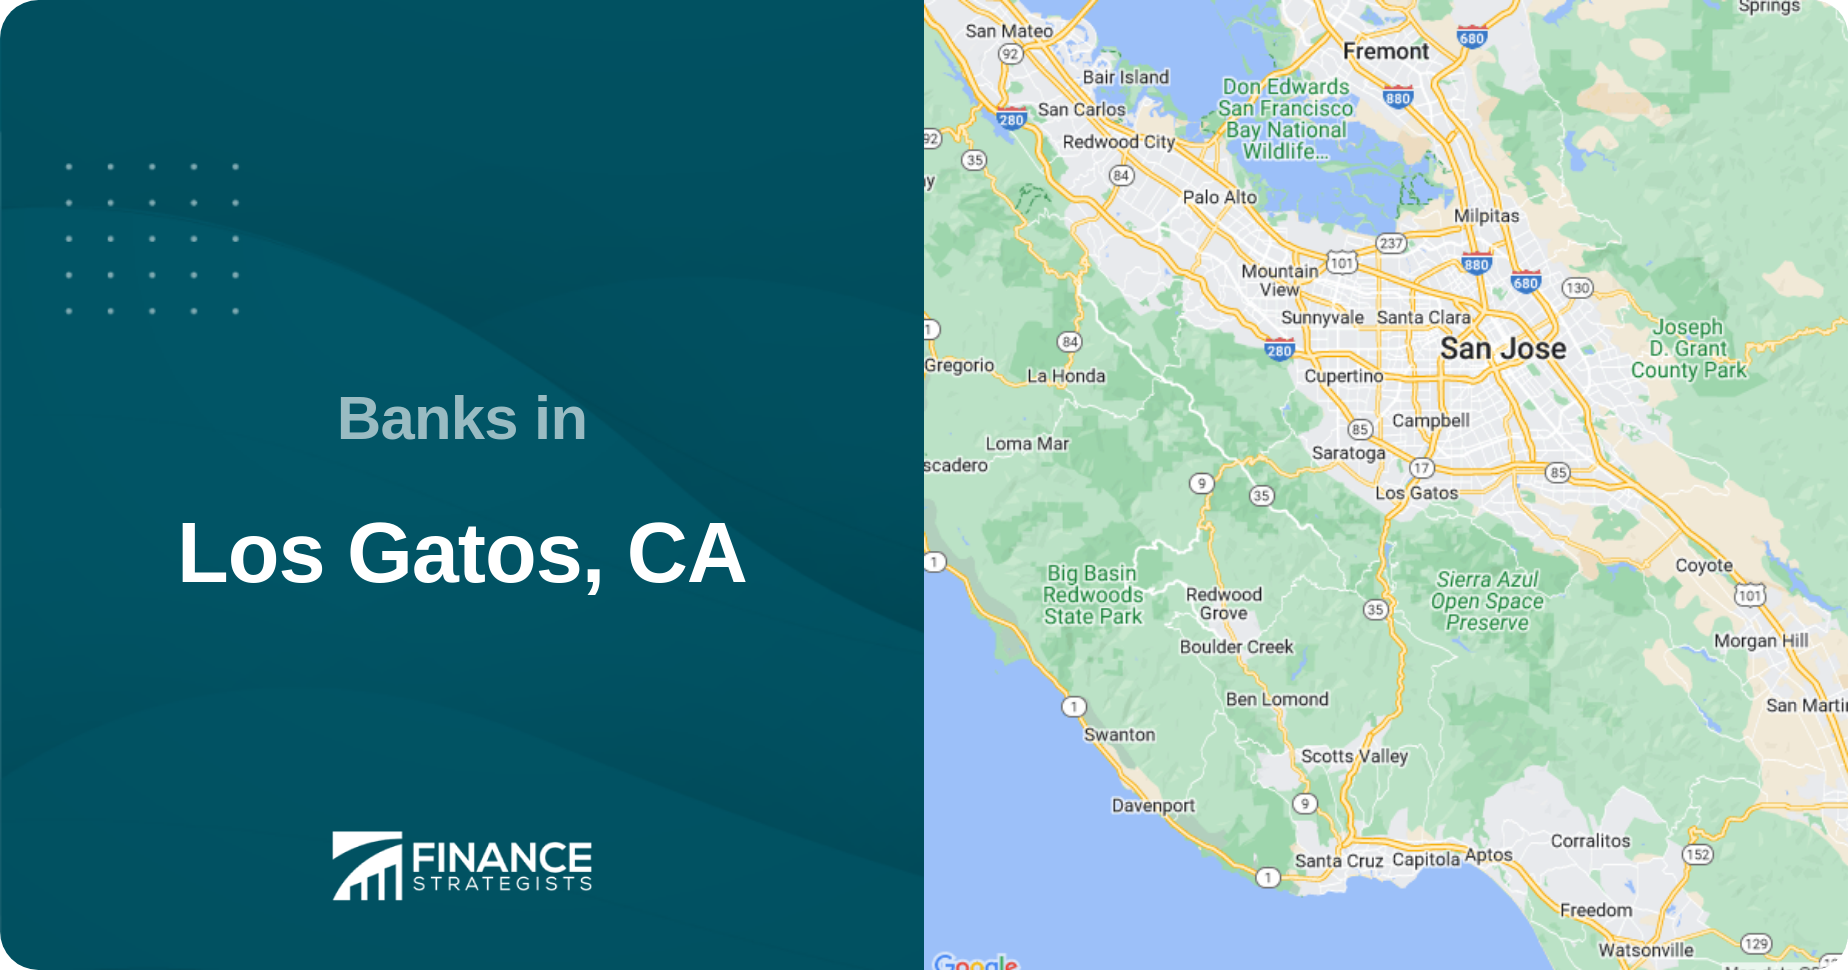 Banks in Los Gatos, CA